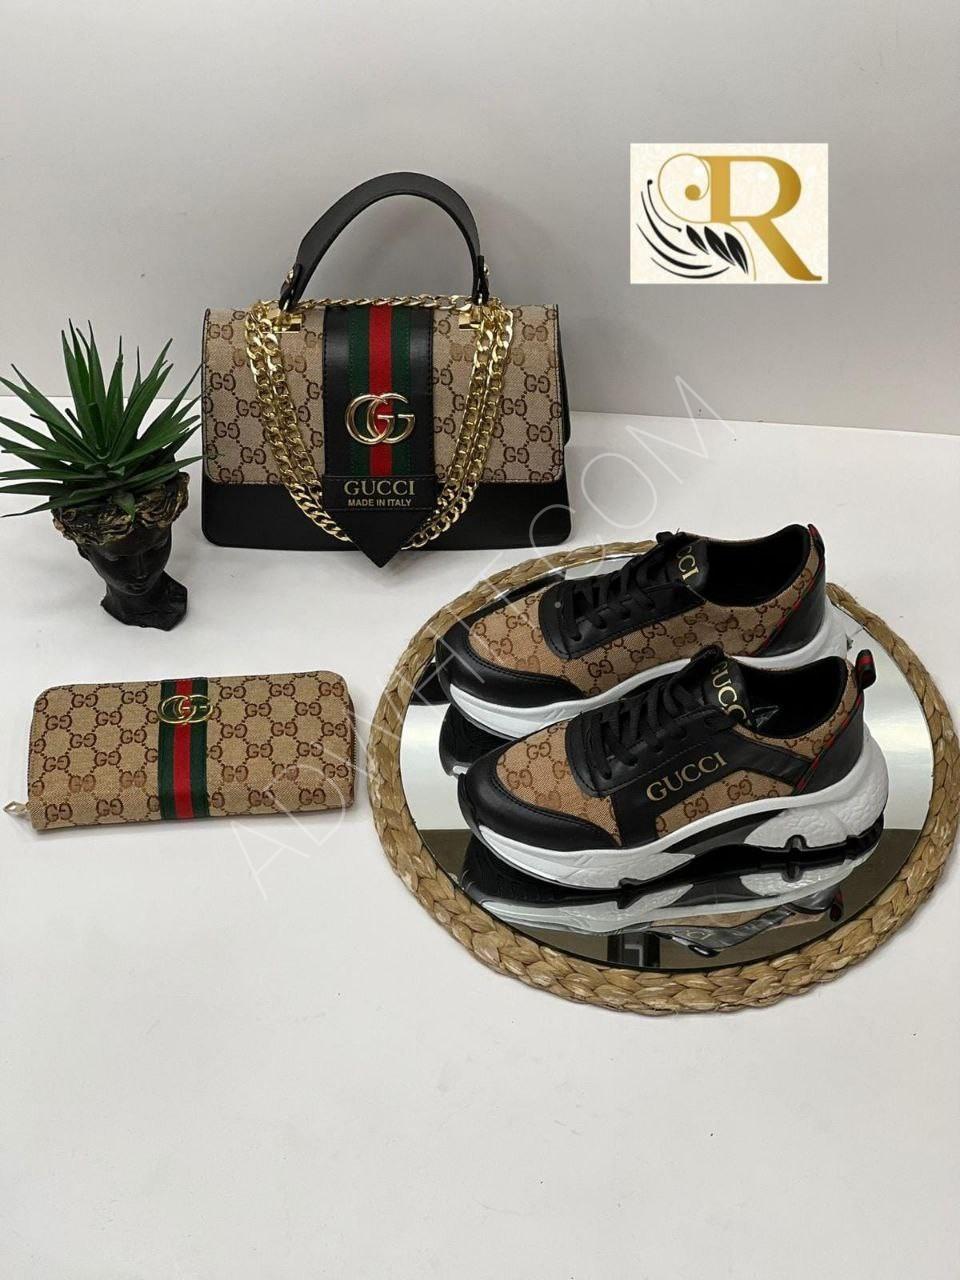 Bags, Matching Gucci Shoes And Handbag